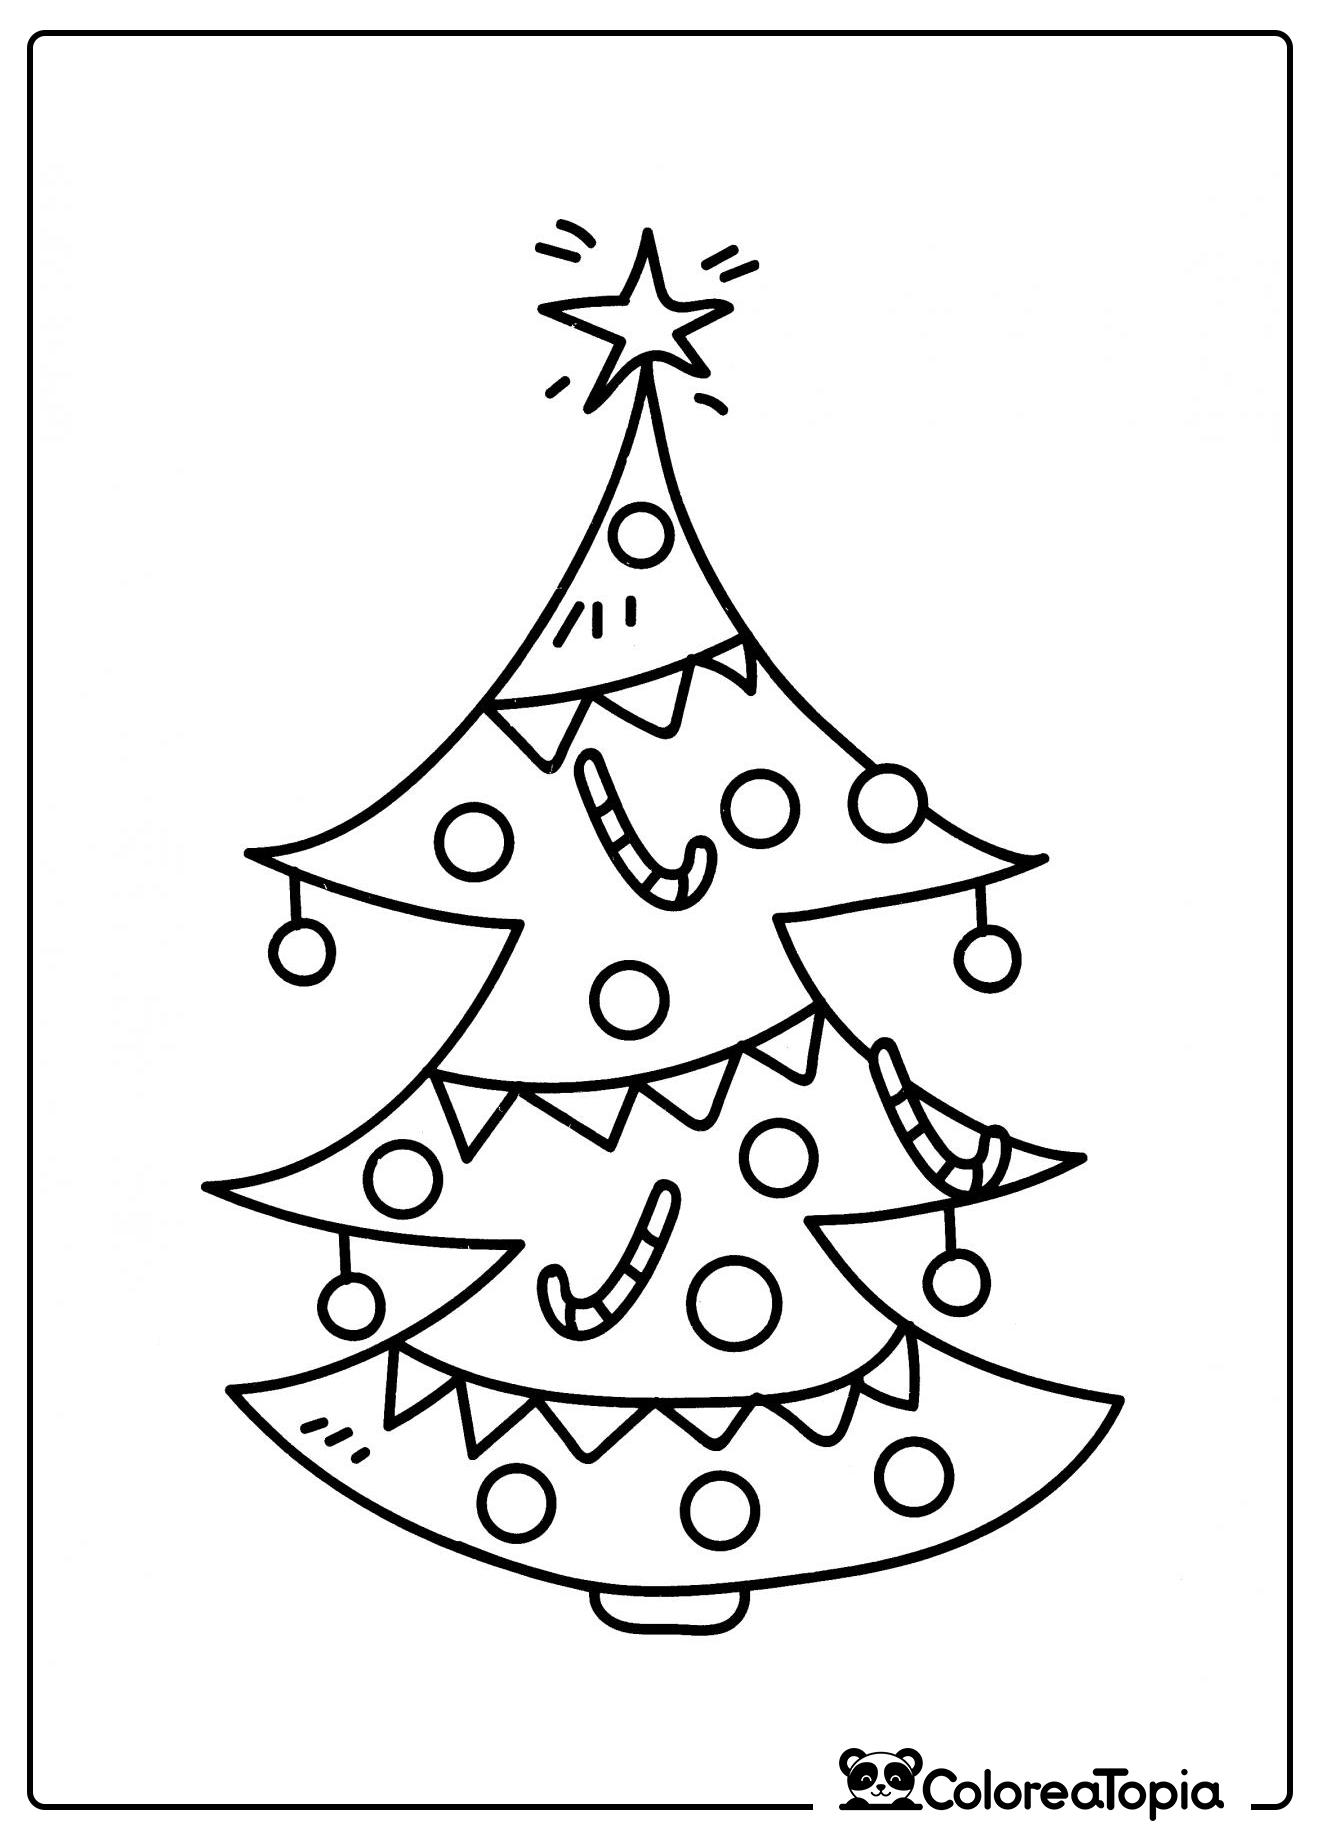 Árbol de Navidad decorado con bolas - dibujo para colorear